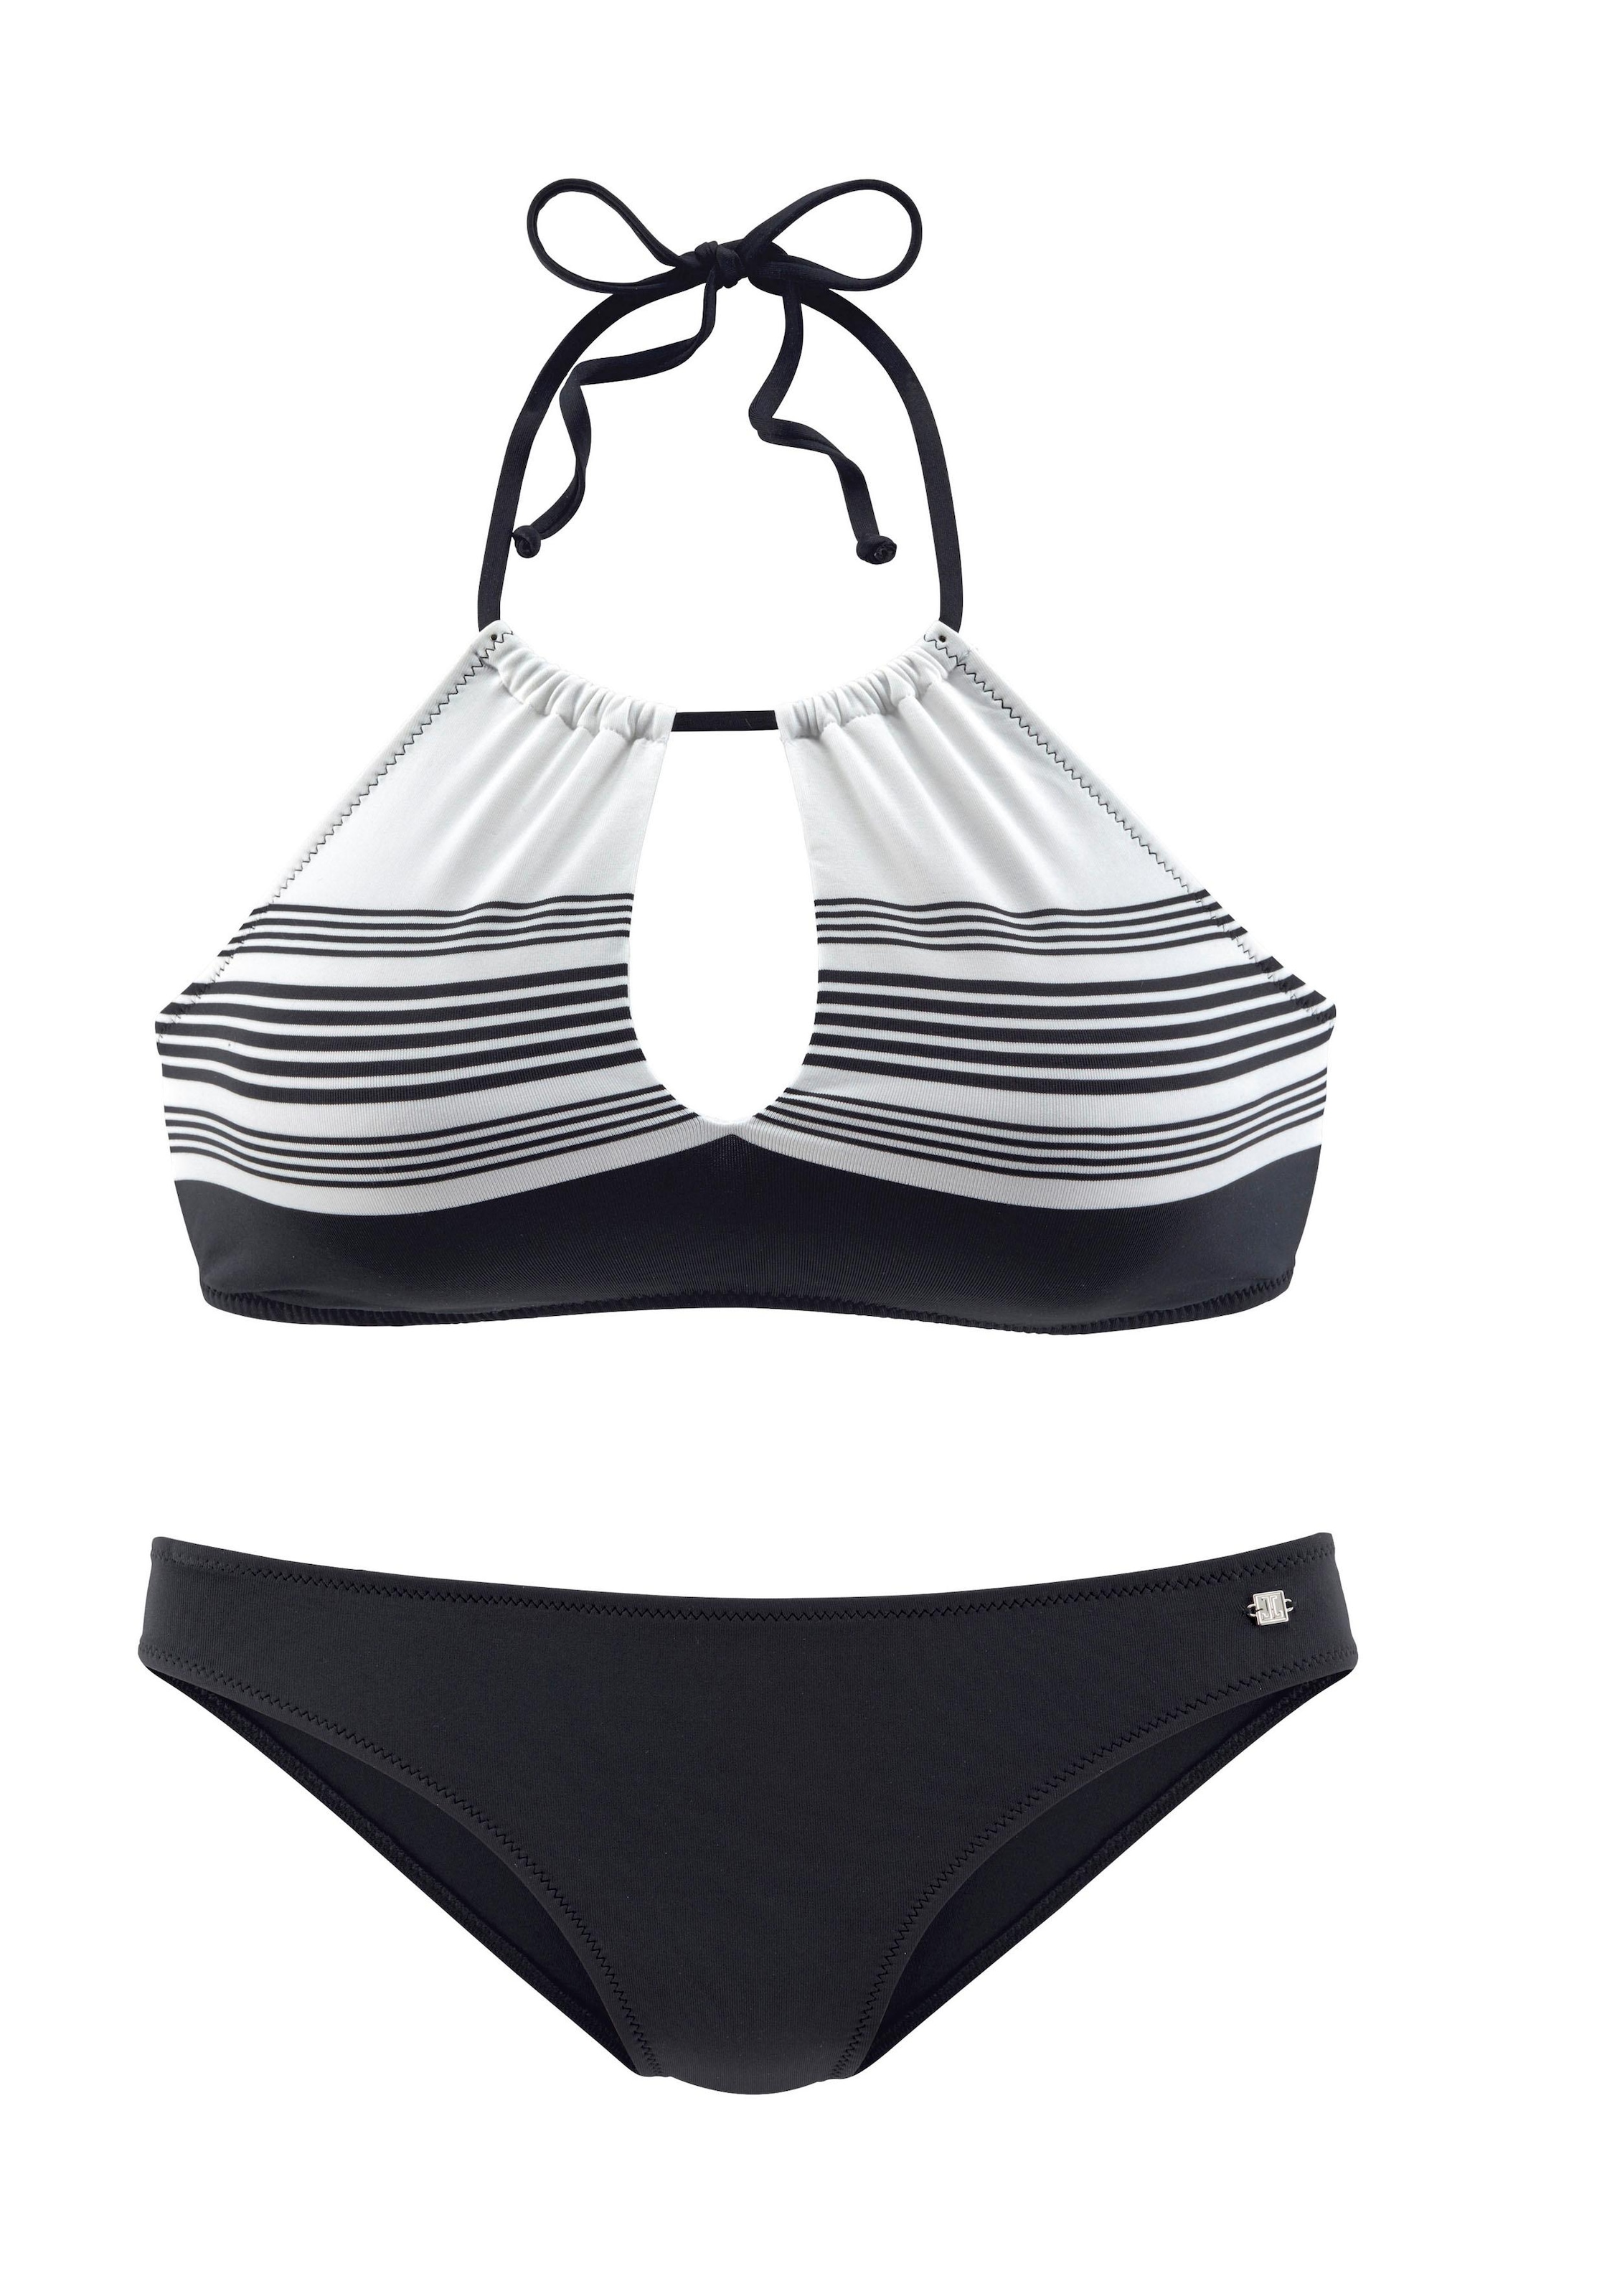 JETTE Bustier-Bikini, mit hochwertigem Design » LASCANA | Bademode,  Unterwäsche & Lingerie online kaufen